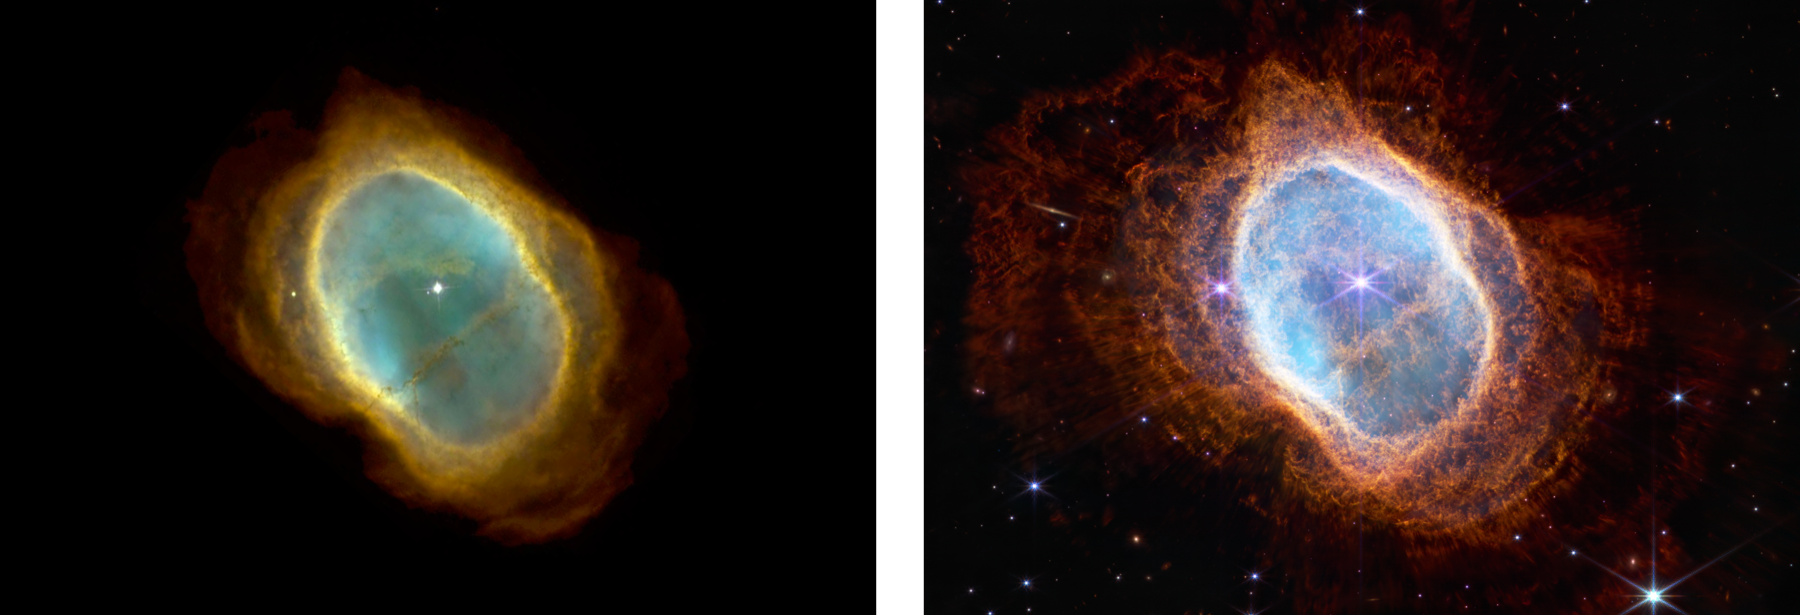 ESA - Webb captures detailed beauty of Ring Nebula